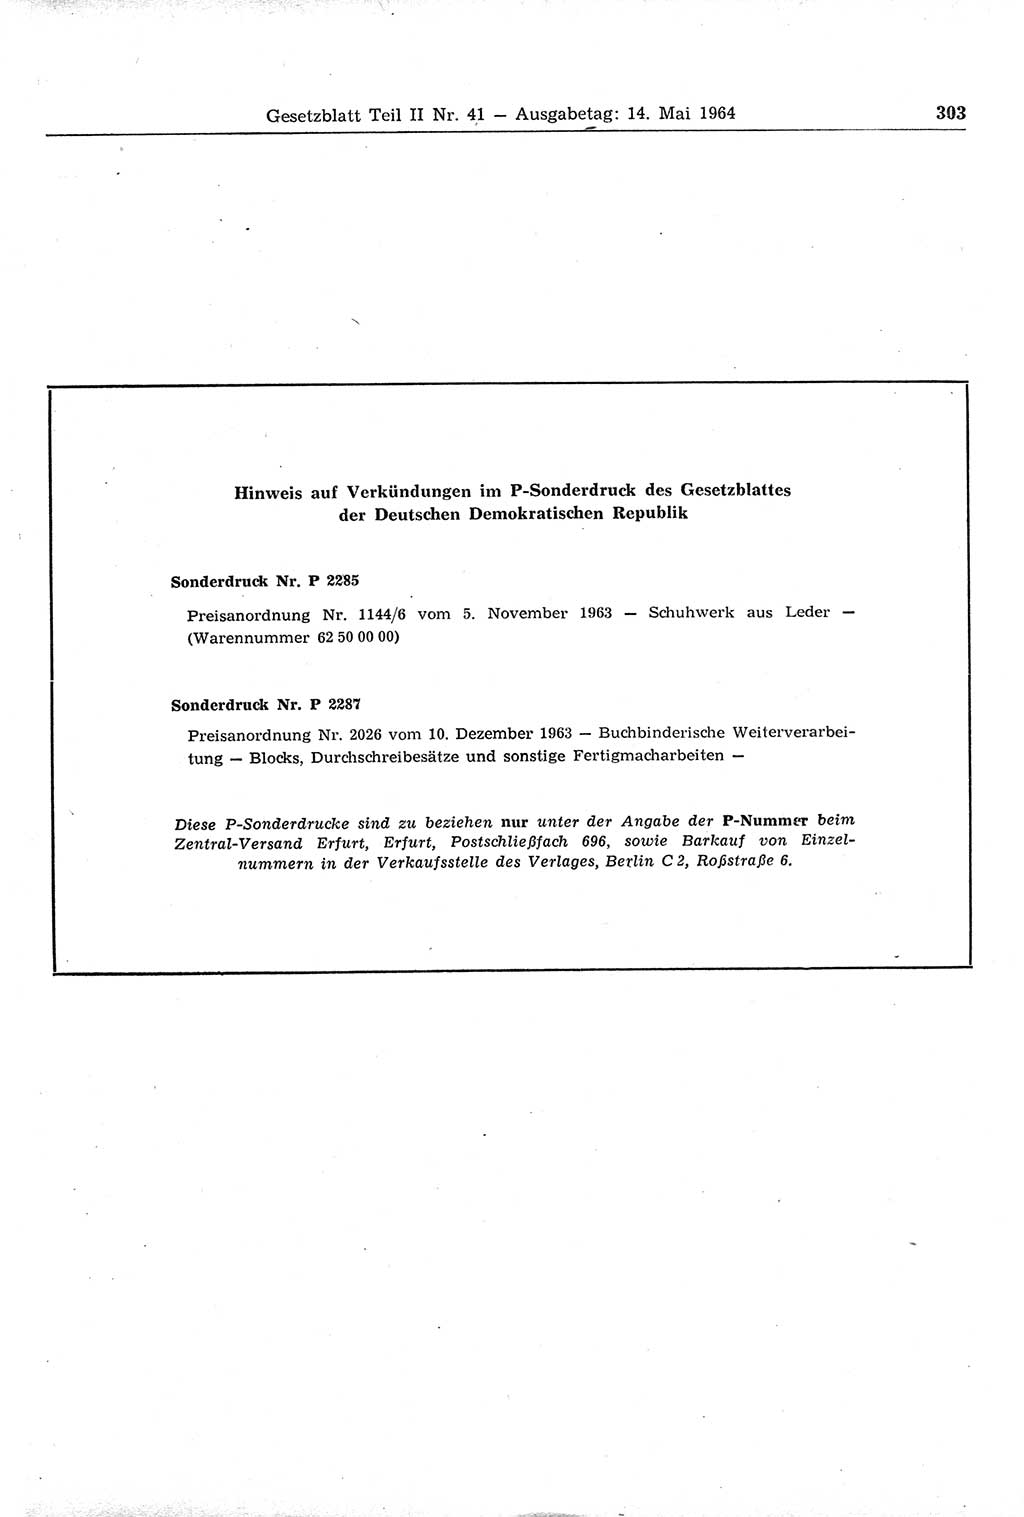 Gesetzblatt (GBl.) der Deutschen Demokratischen Republik (DDR) Teil ⅠⅠ 1964, Seite 303 (GBl. DDR ⅠⅠ 1964, S. 303)